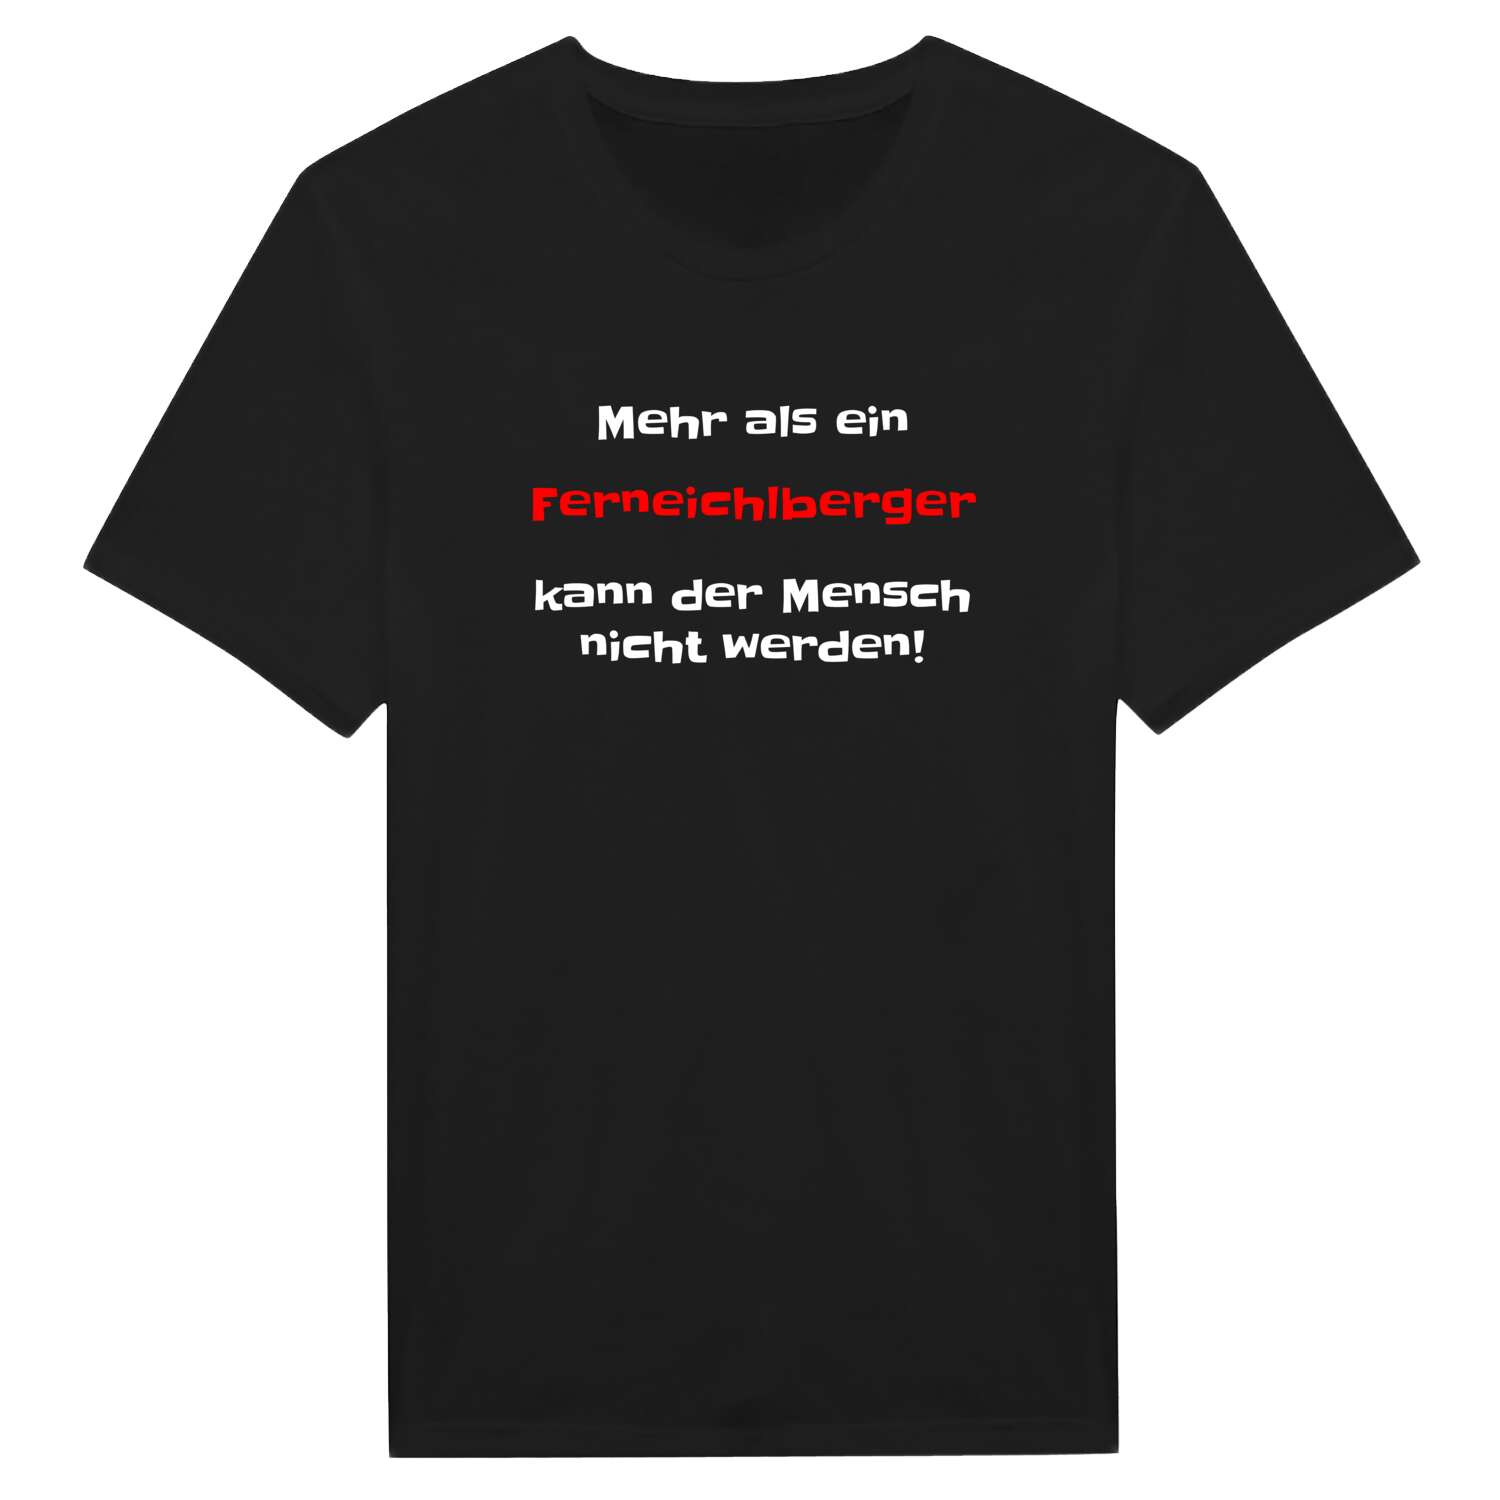 Ferneichlberg T-Shirt »Mehr als ein«